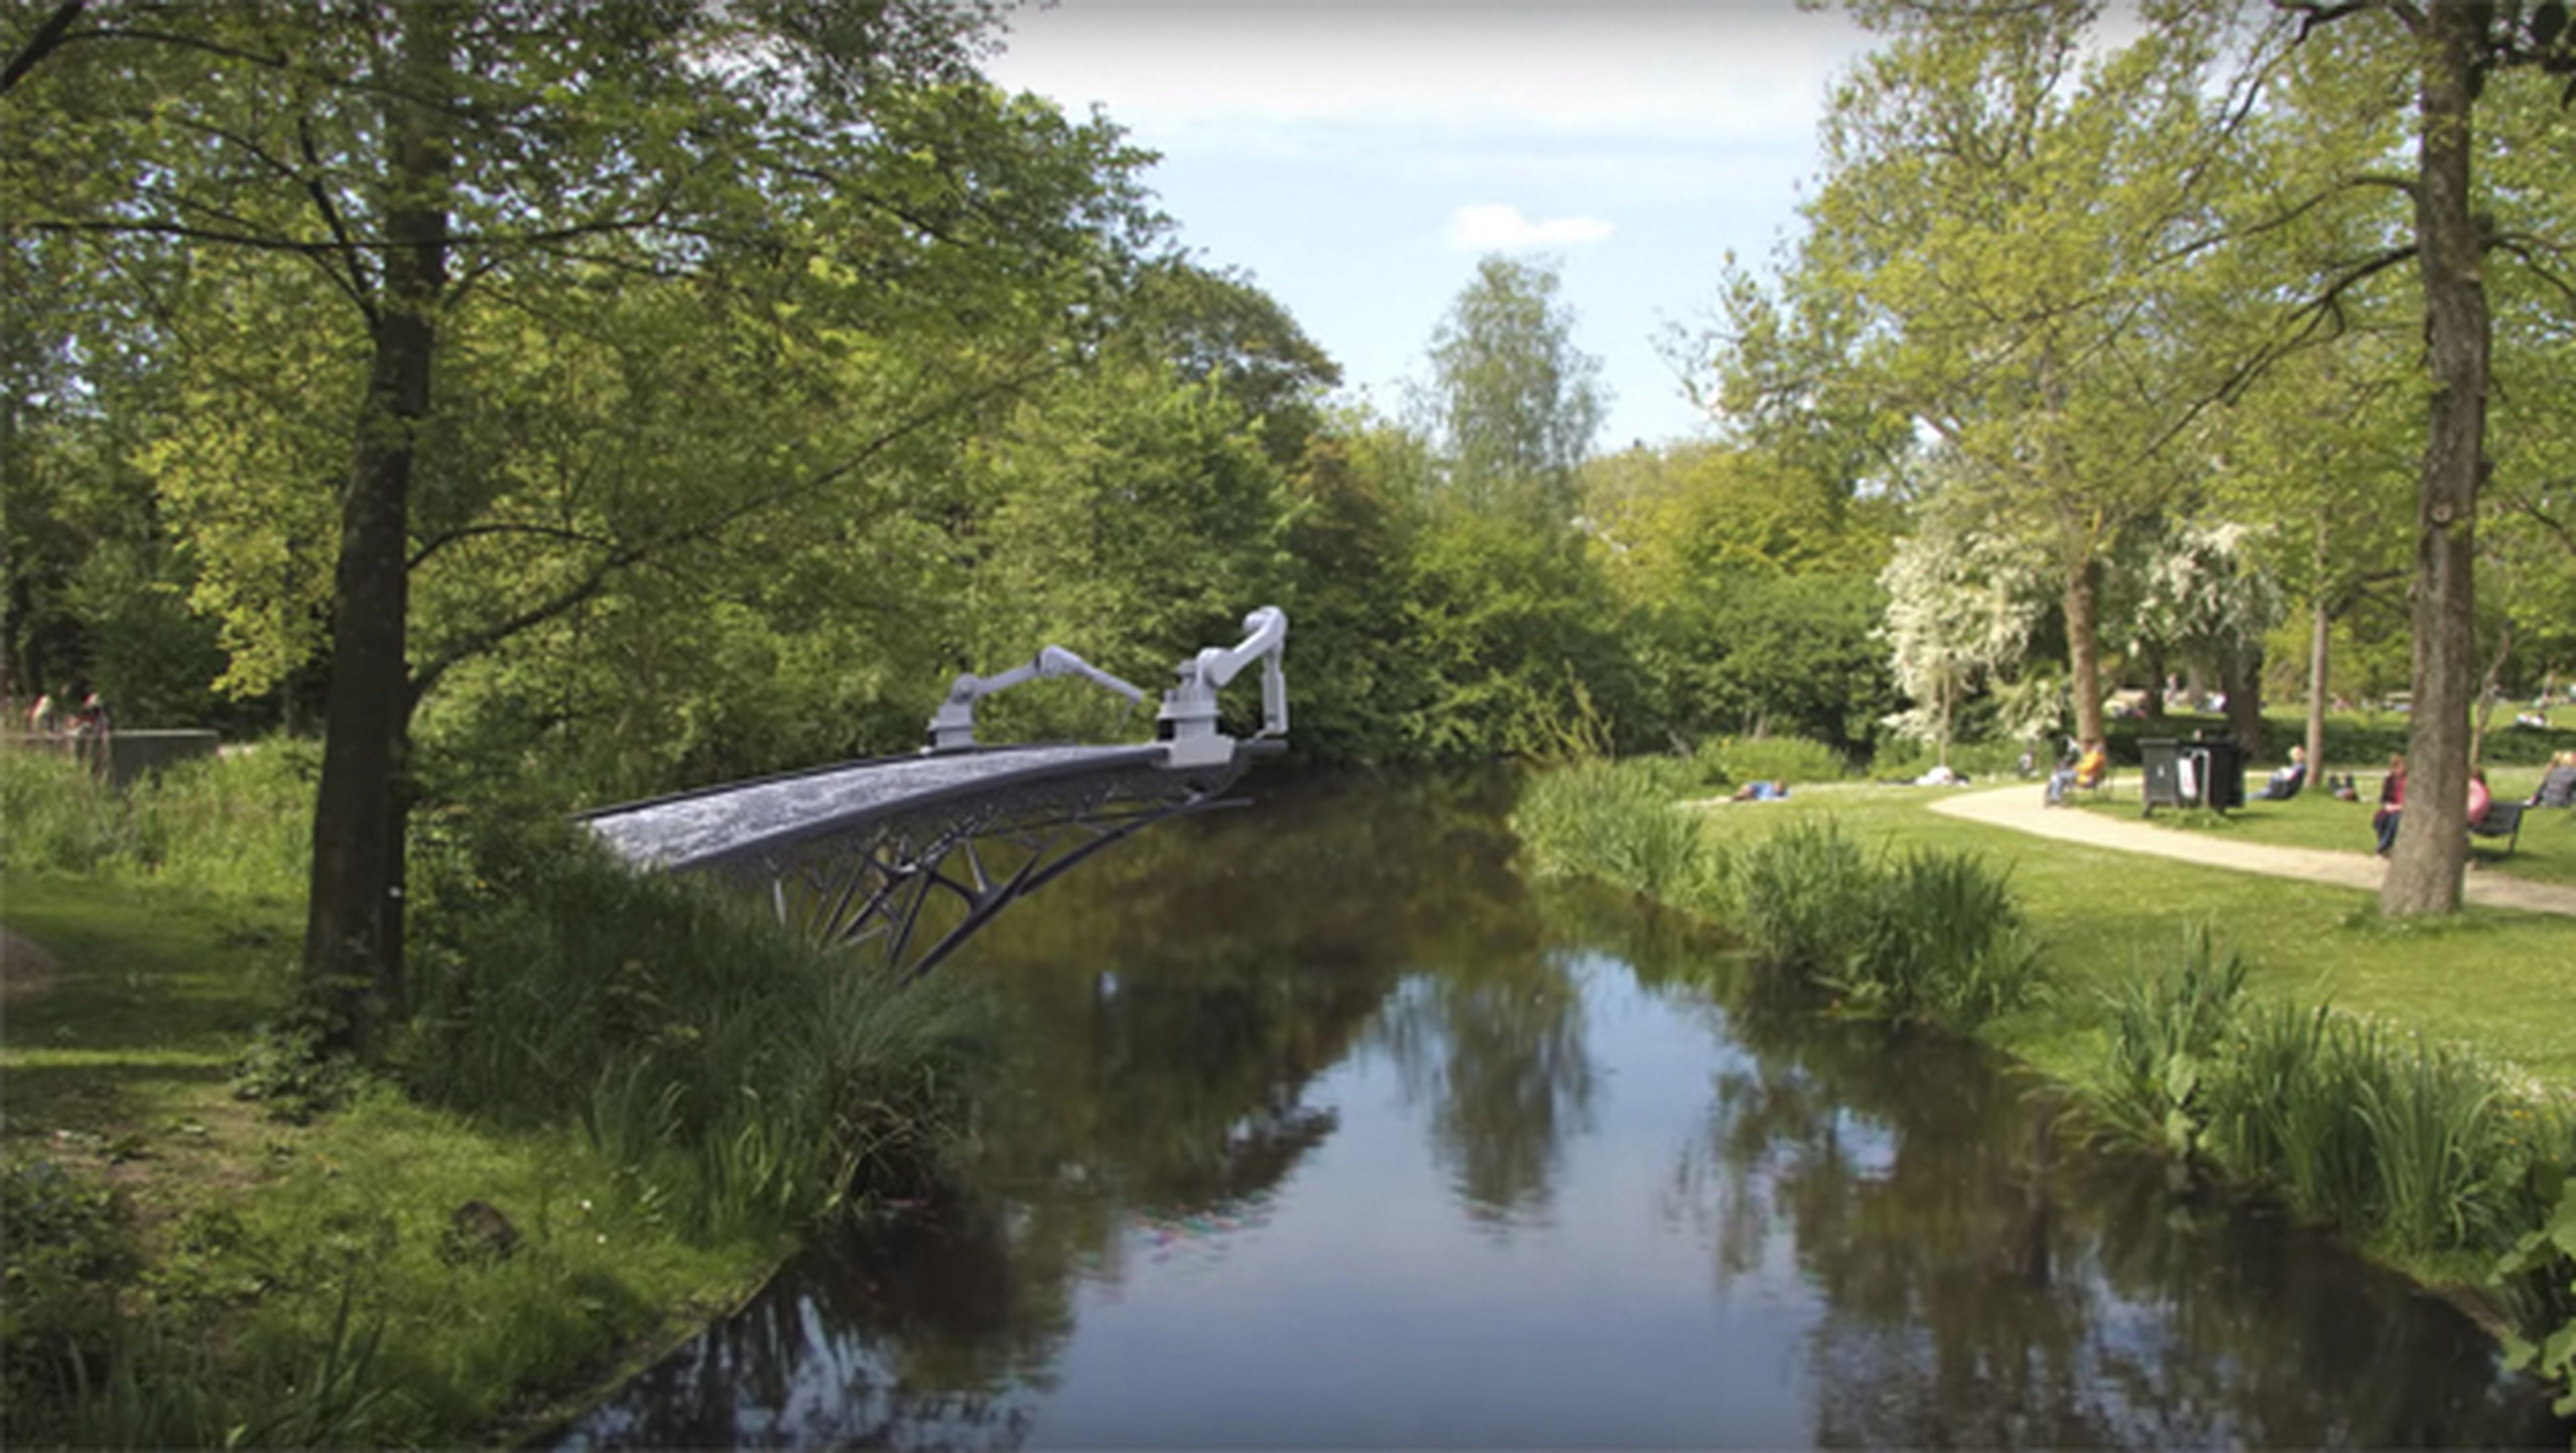 Crean un robot que puede imprimir en el aire puentes en 3D